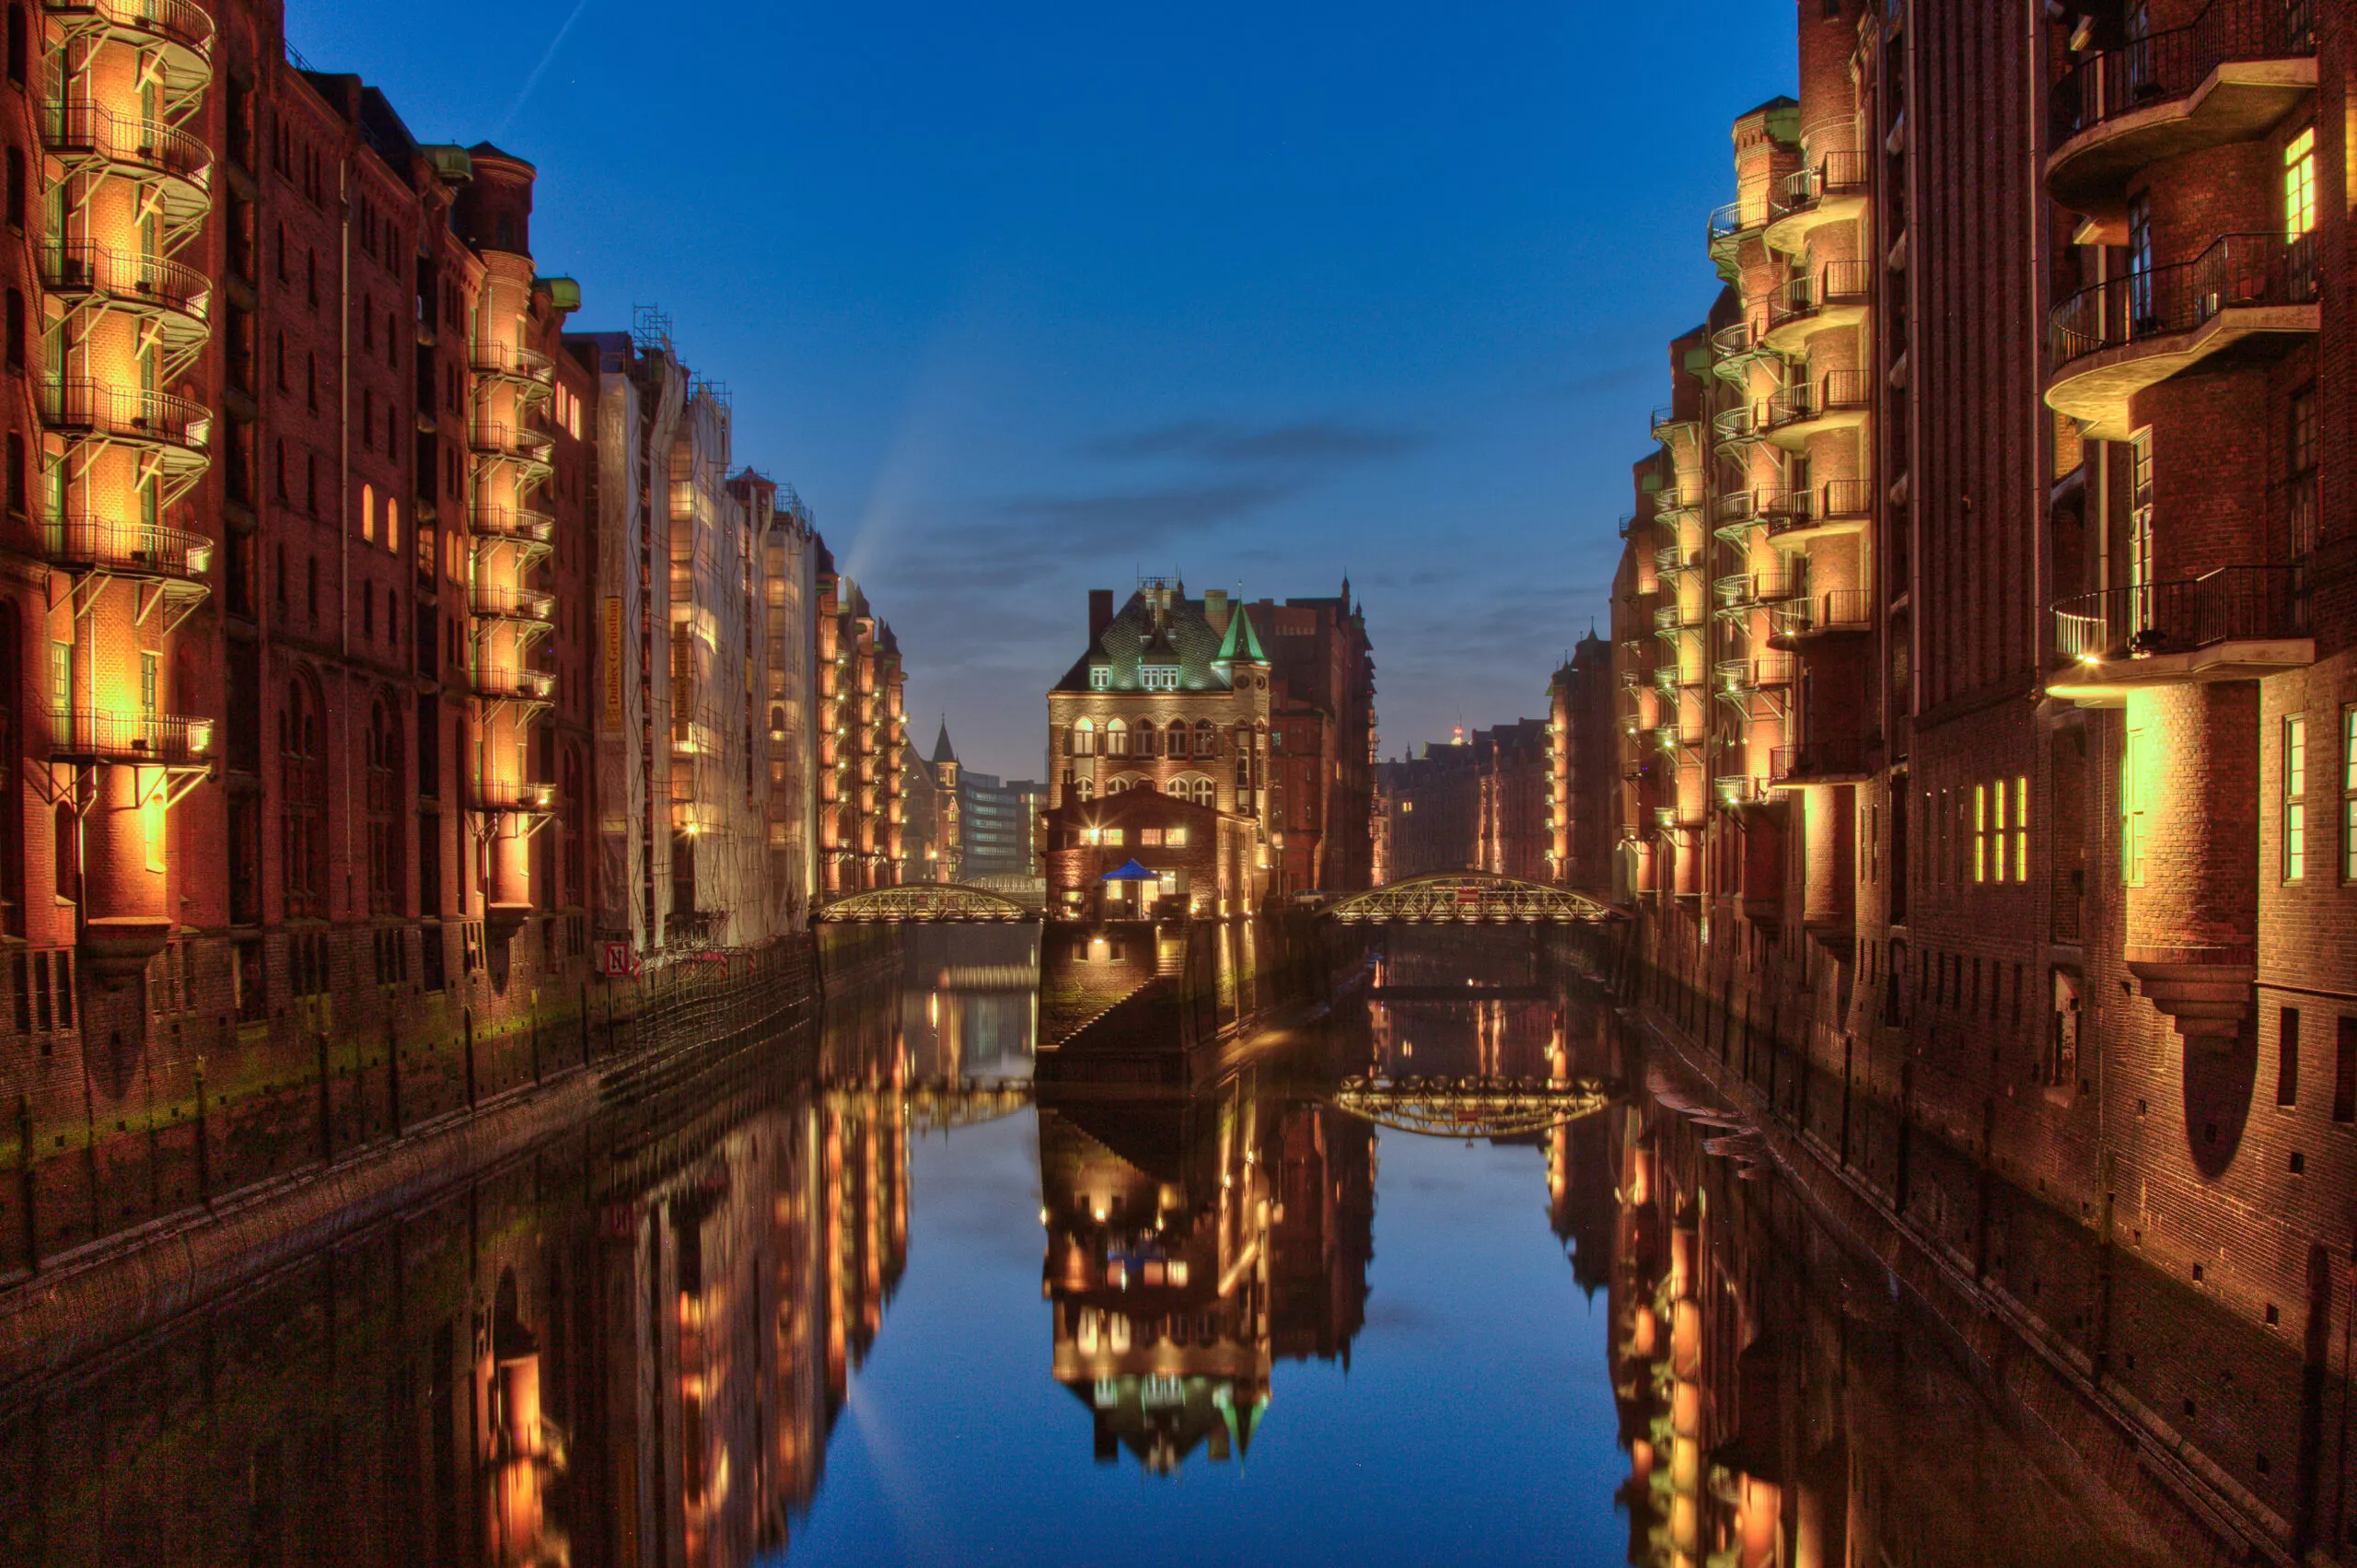 Vista panoramica delle luci degli edifici della città di Amburgo, Speicherstadt